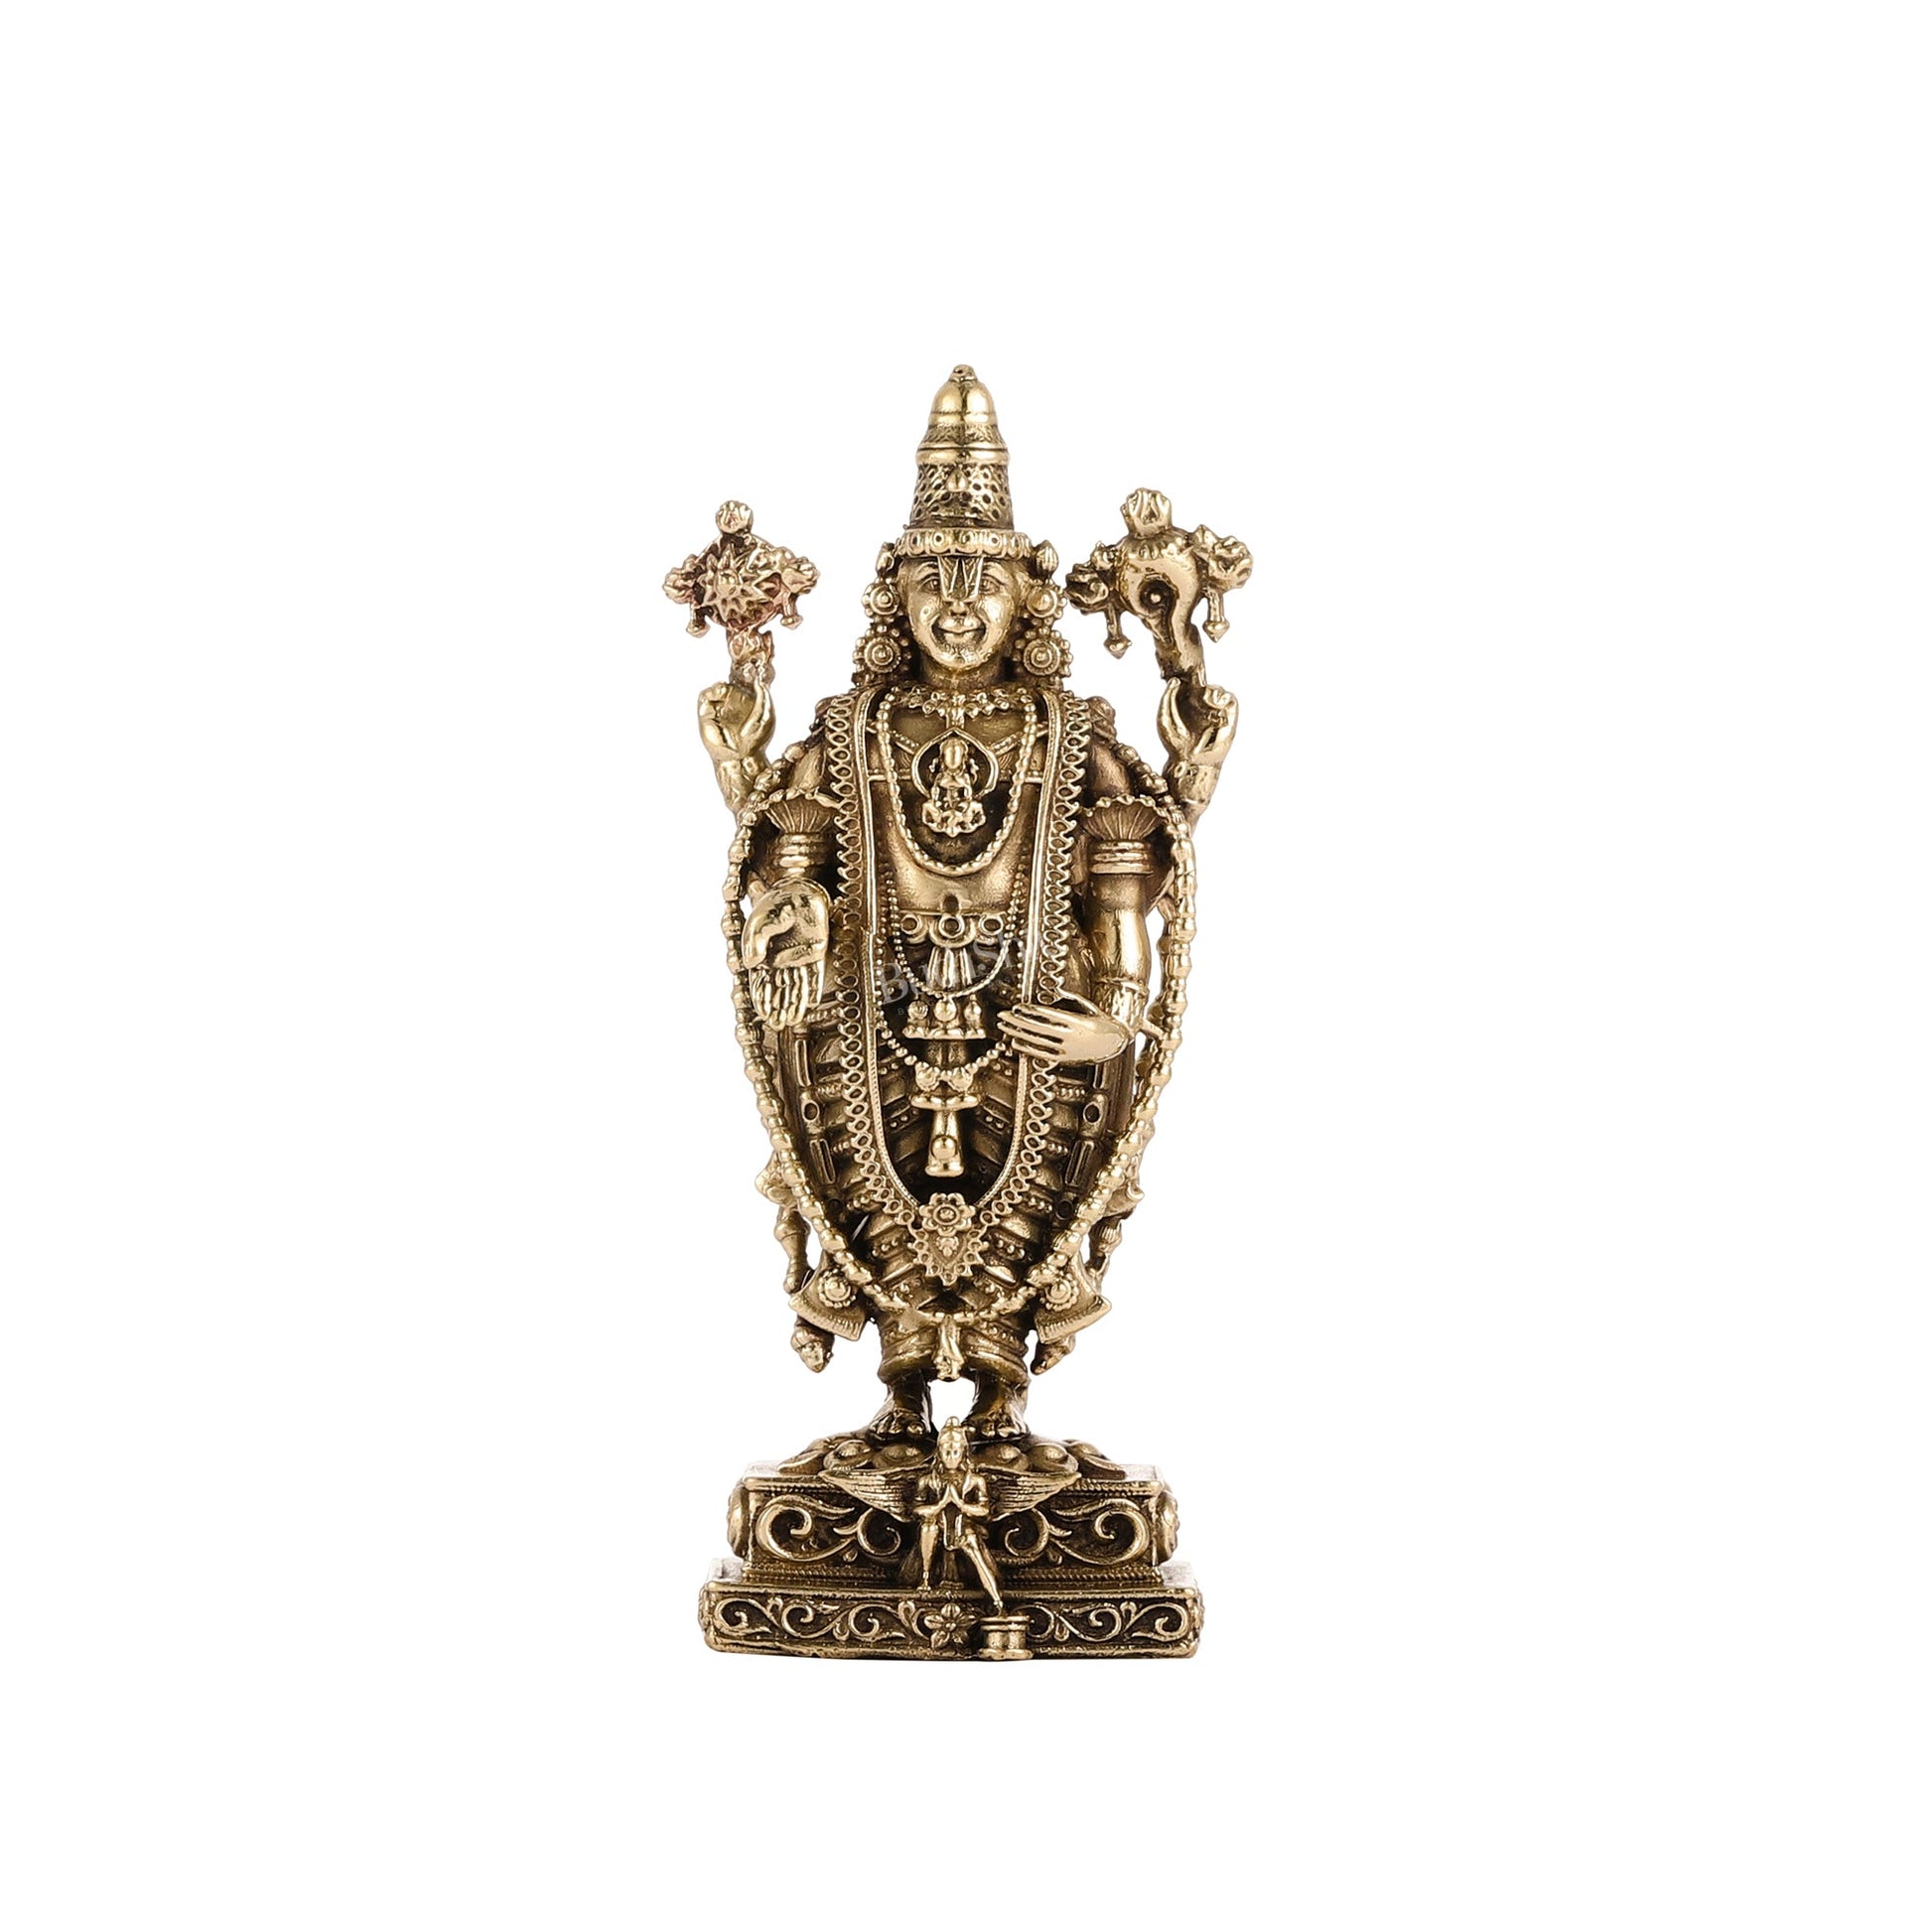 Pure Brass Superfine Lord Tirupati Balaji Idol - 6" - Budhshiv.com